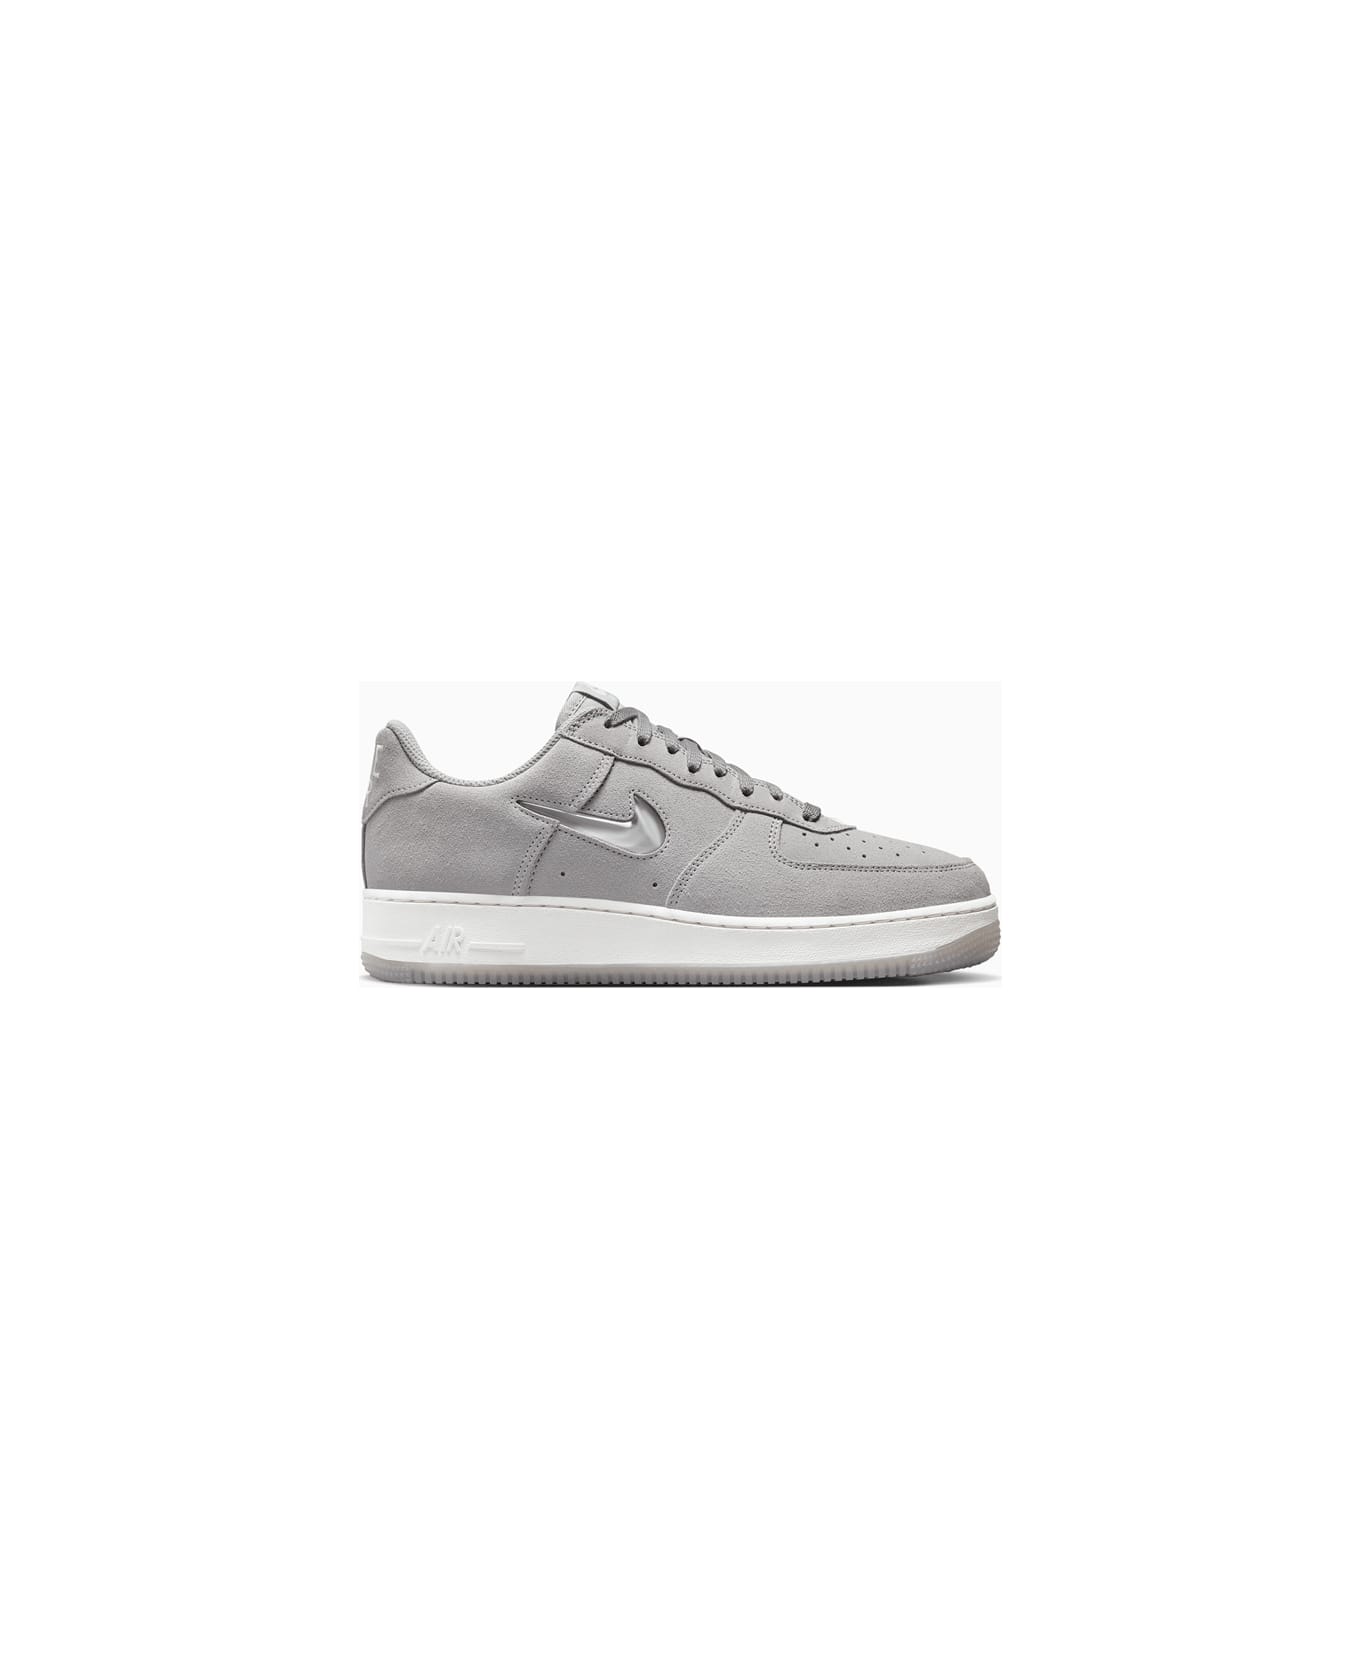 Nike Air Force 1 Low Retro Sneakers Dv0785-003 - Grey スニーカー